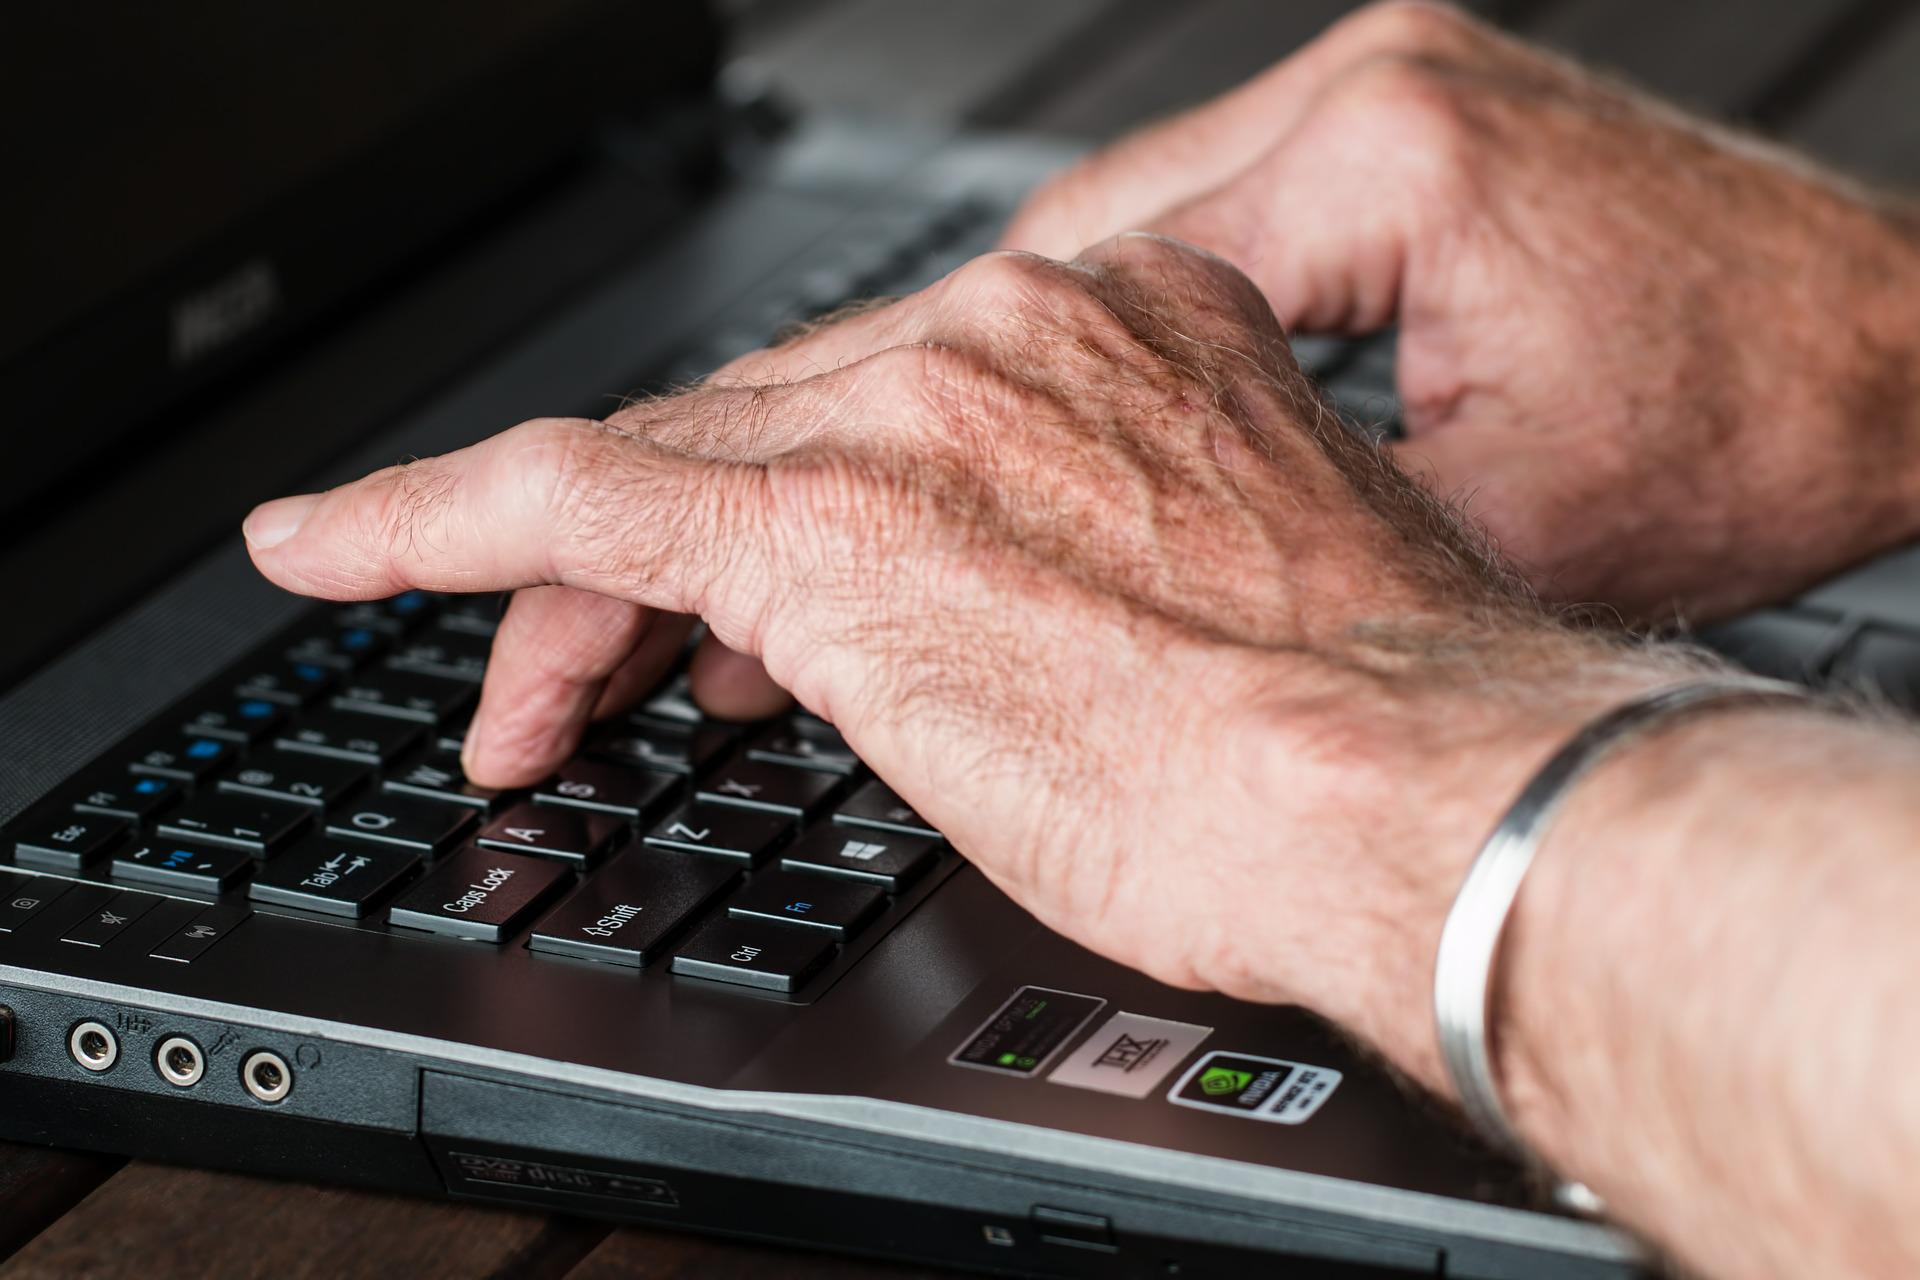 fotografia przedstawia ręcę starszej osoby piszącej coś na klawiaturze laptopa. Dłonie są pomarszczone, a na lewym nadgarstku znajdue się metalowa bransoletka. Laptop jest koloru czarnego i widać jedynie fragment klawiatury i skrawek monitora.